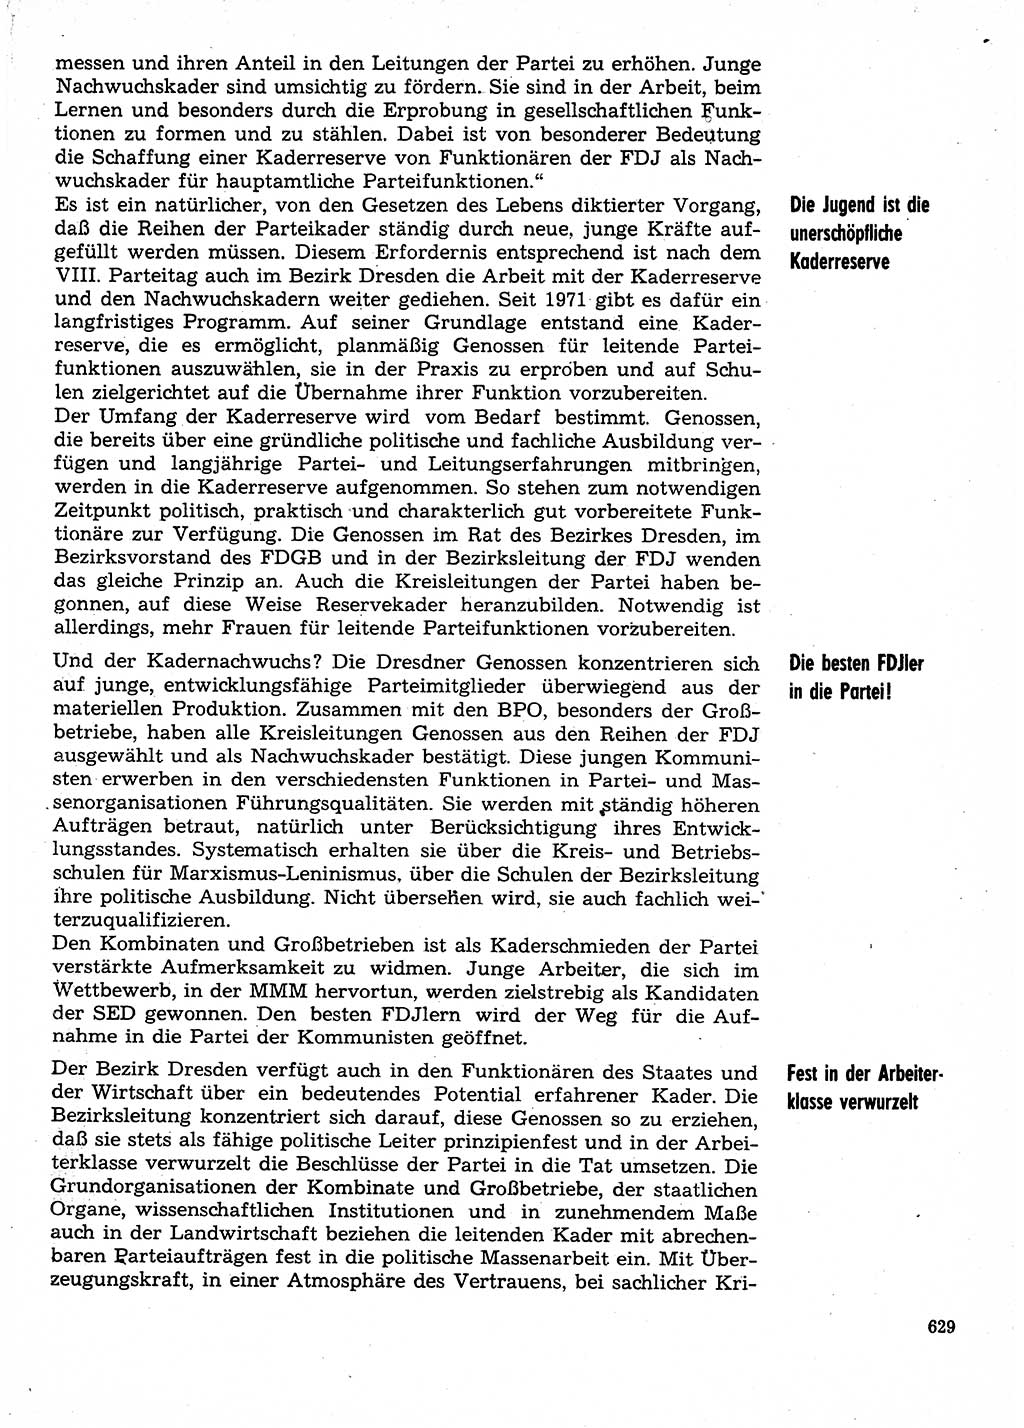 Neuer Weg (NW), Organ des Zentralkomitees (ZK) der SED (Sozialistische Einheitspartei Deutschlands) für Fragen des Parteilebens, 30. Jahrgang [Deutsche Demokratische Republik (DDR)] 1975, Seite 629 (NW ZK SED DDR 1975, S. 629)